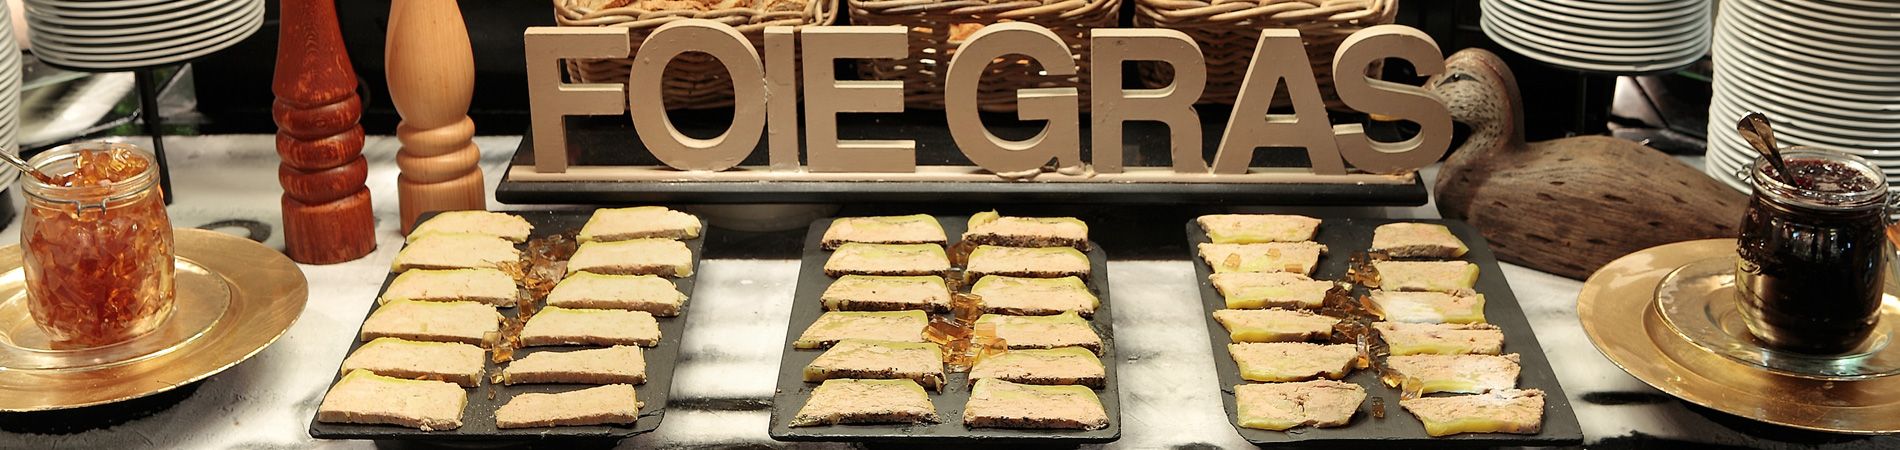 foie gras restaurant grands buffets narbonne